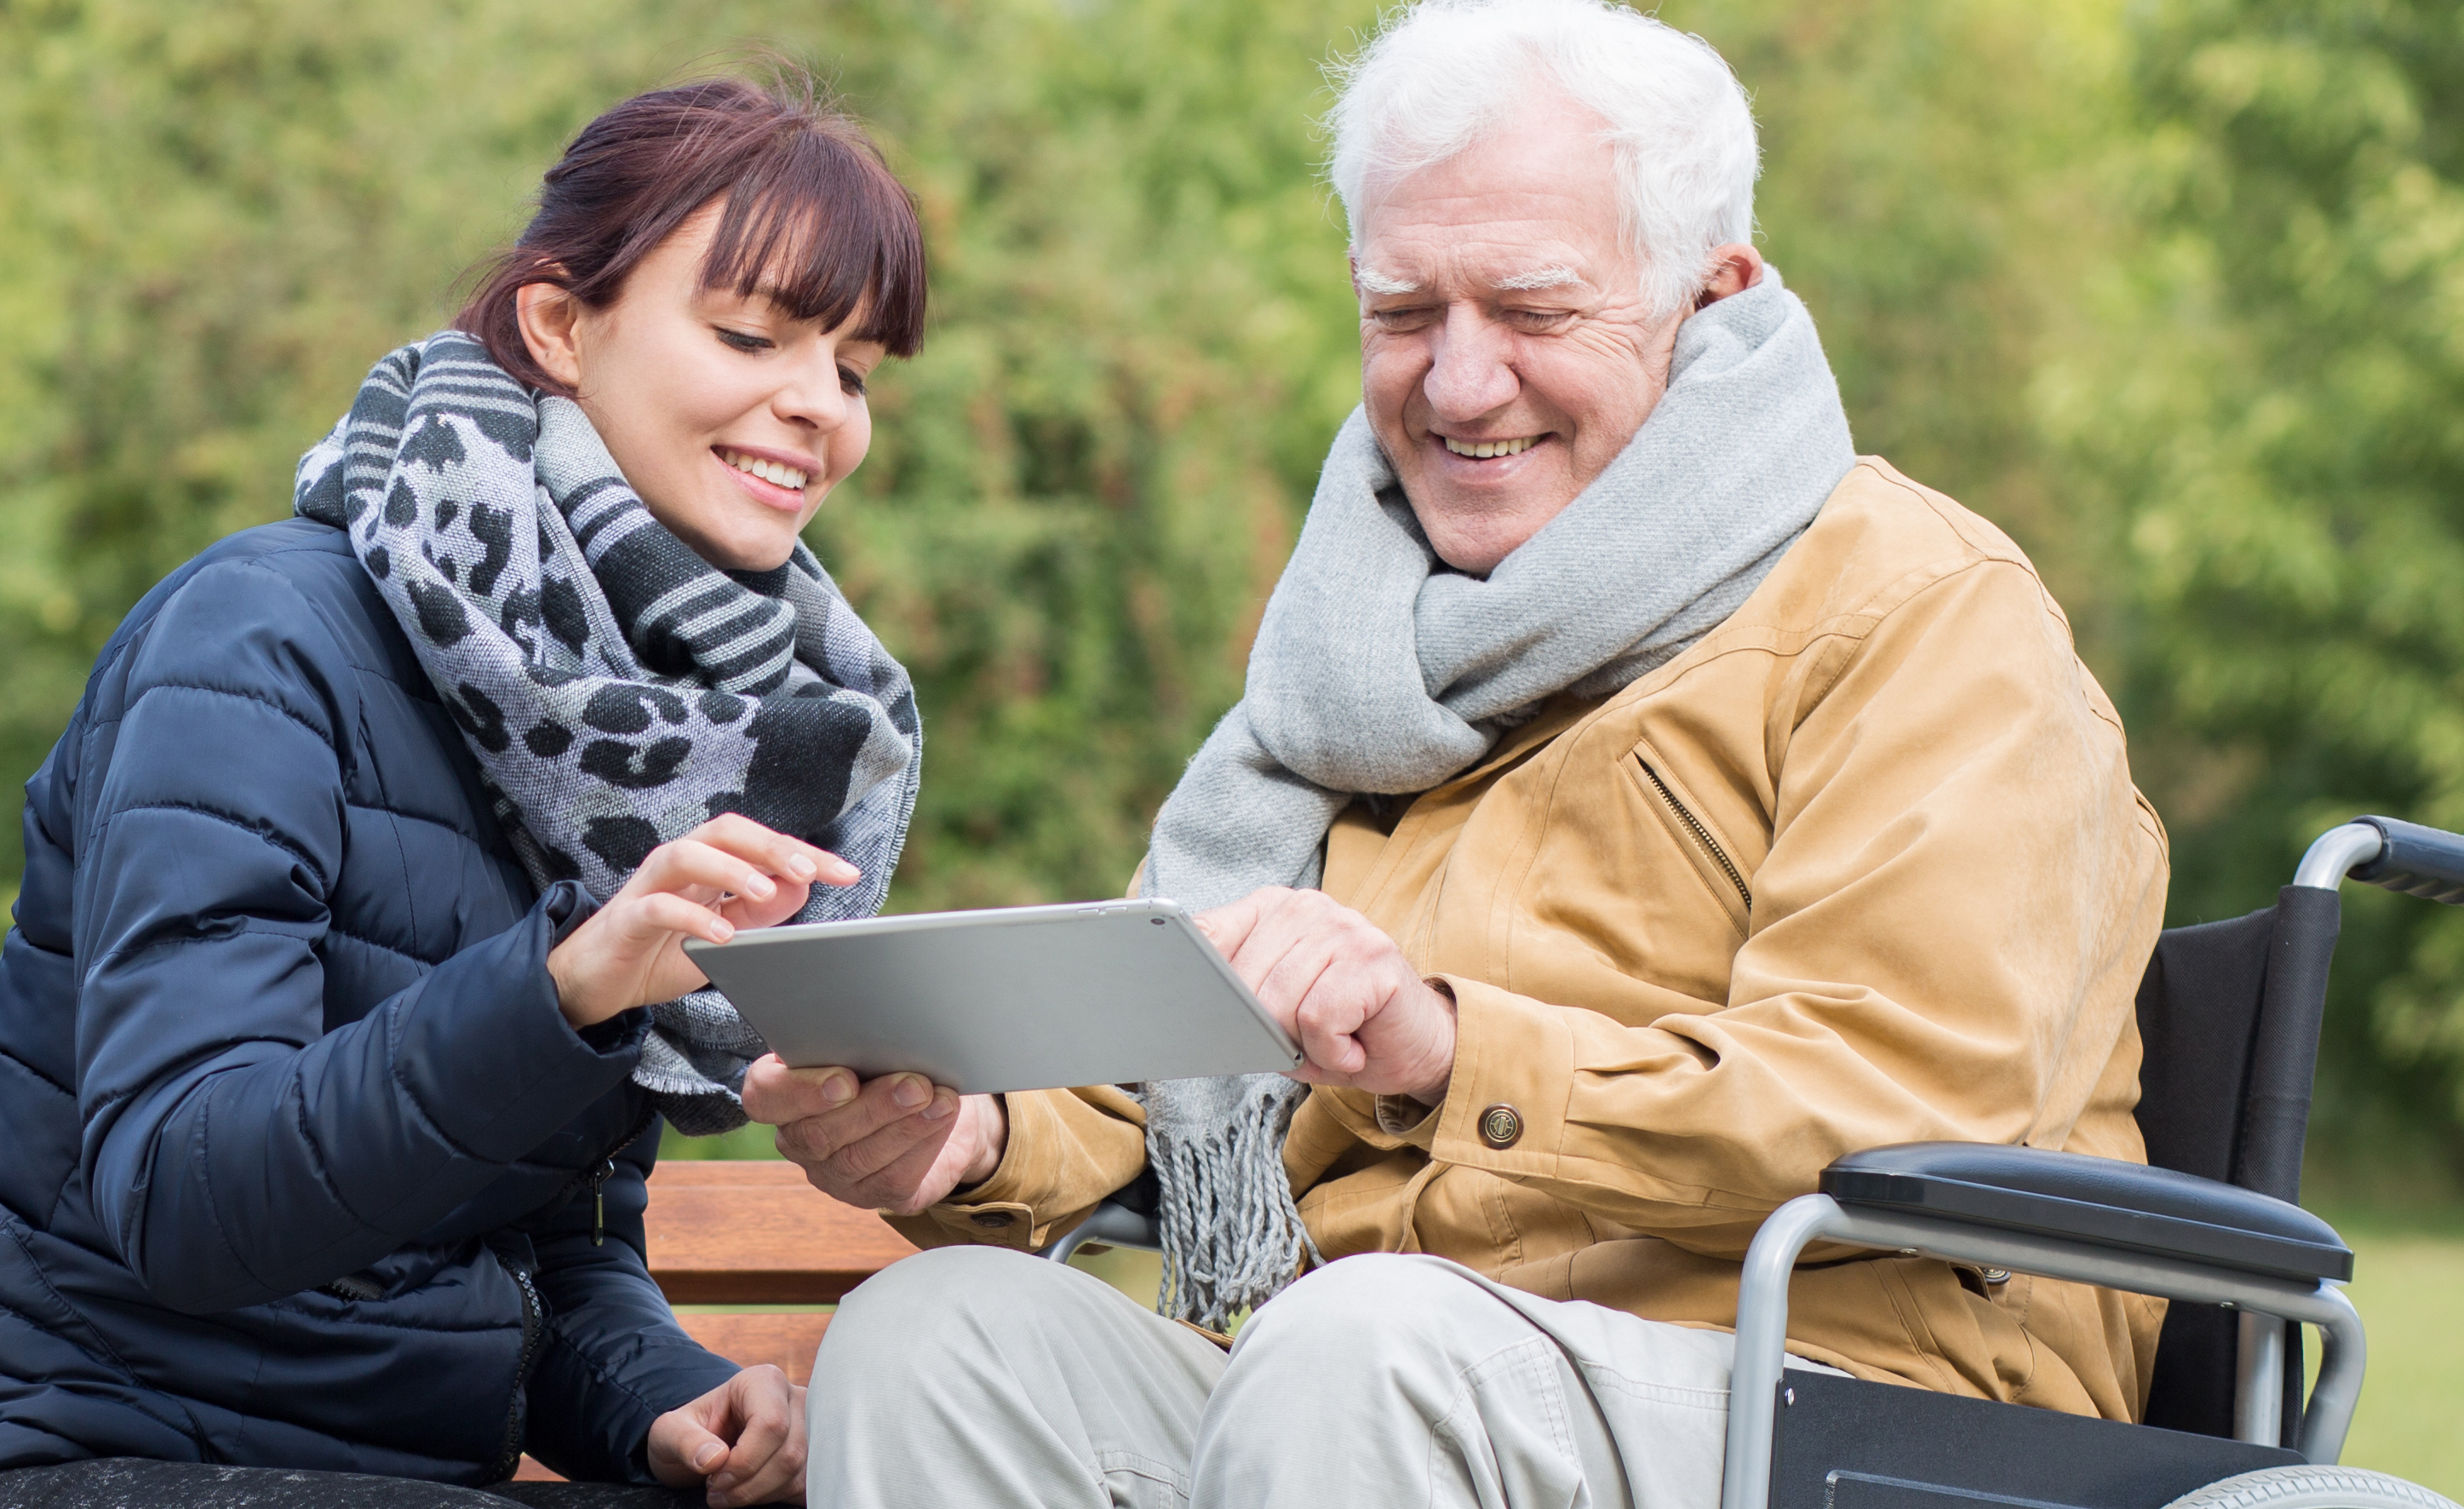 Un hombre en silla de ruedas y una mujer joven miran juntos una tableta en un parque